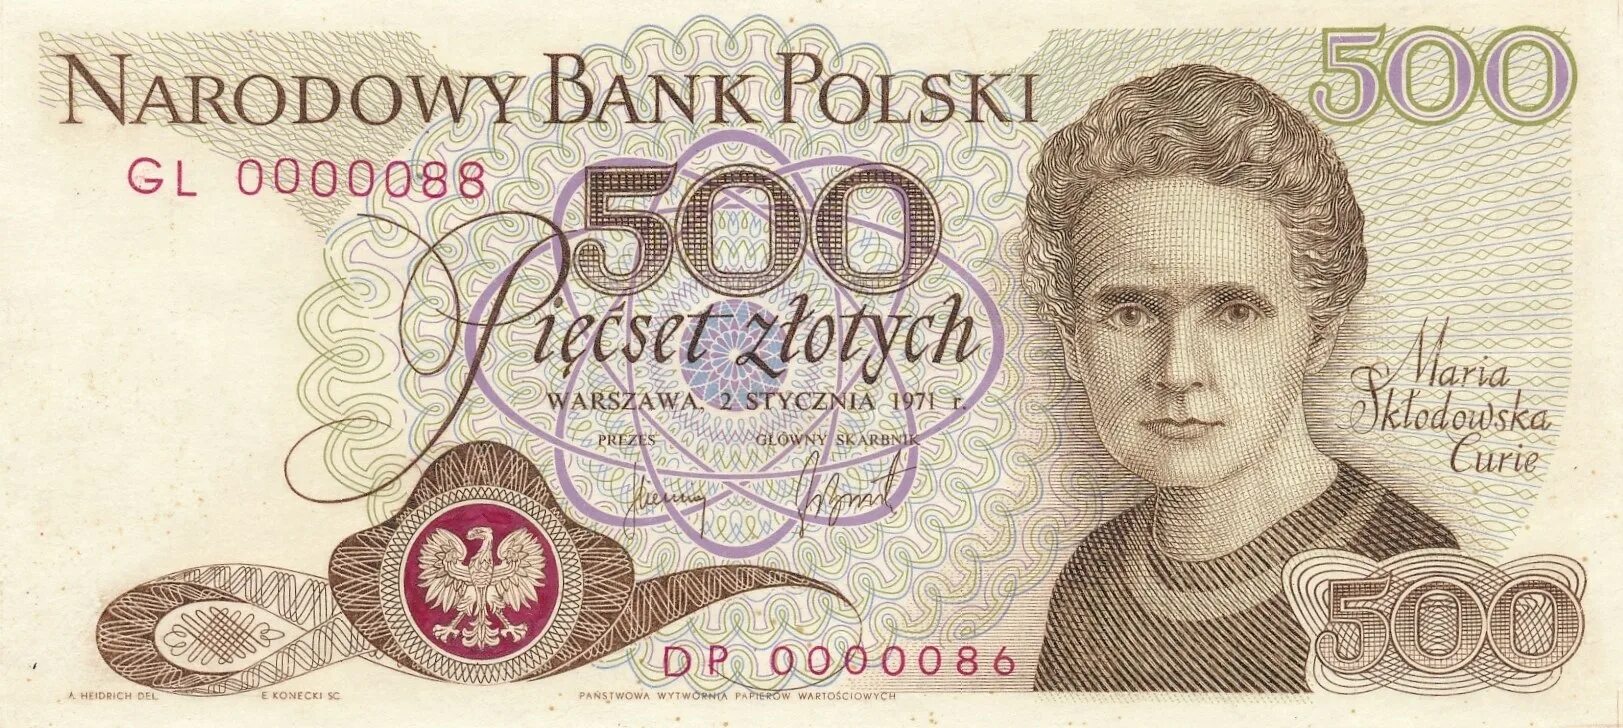 500 Польских злотых. 500 Злотых банкнота. Польская валюта 500. Польские деньги 500 злотых. Перевести польские деньги